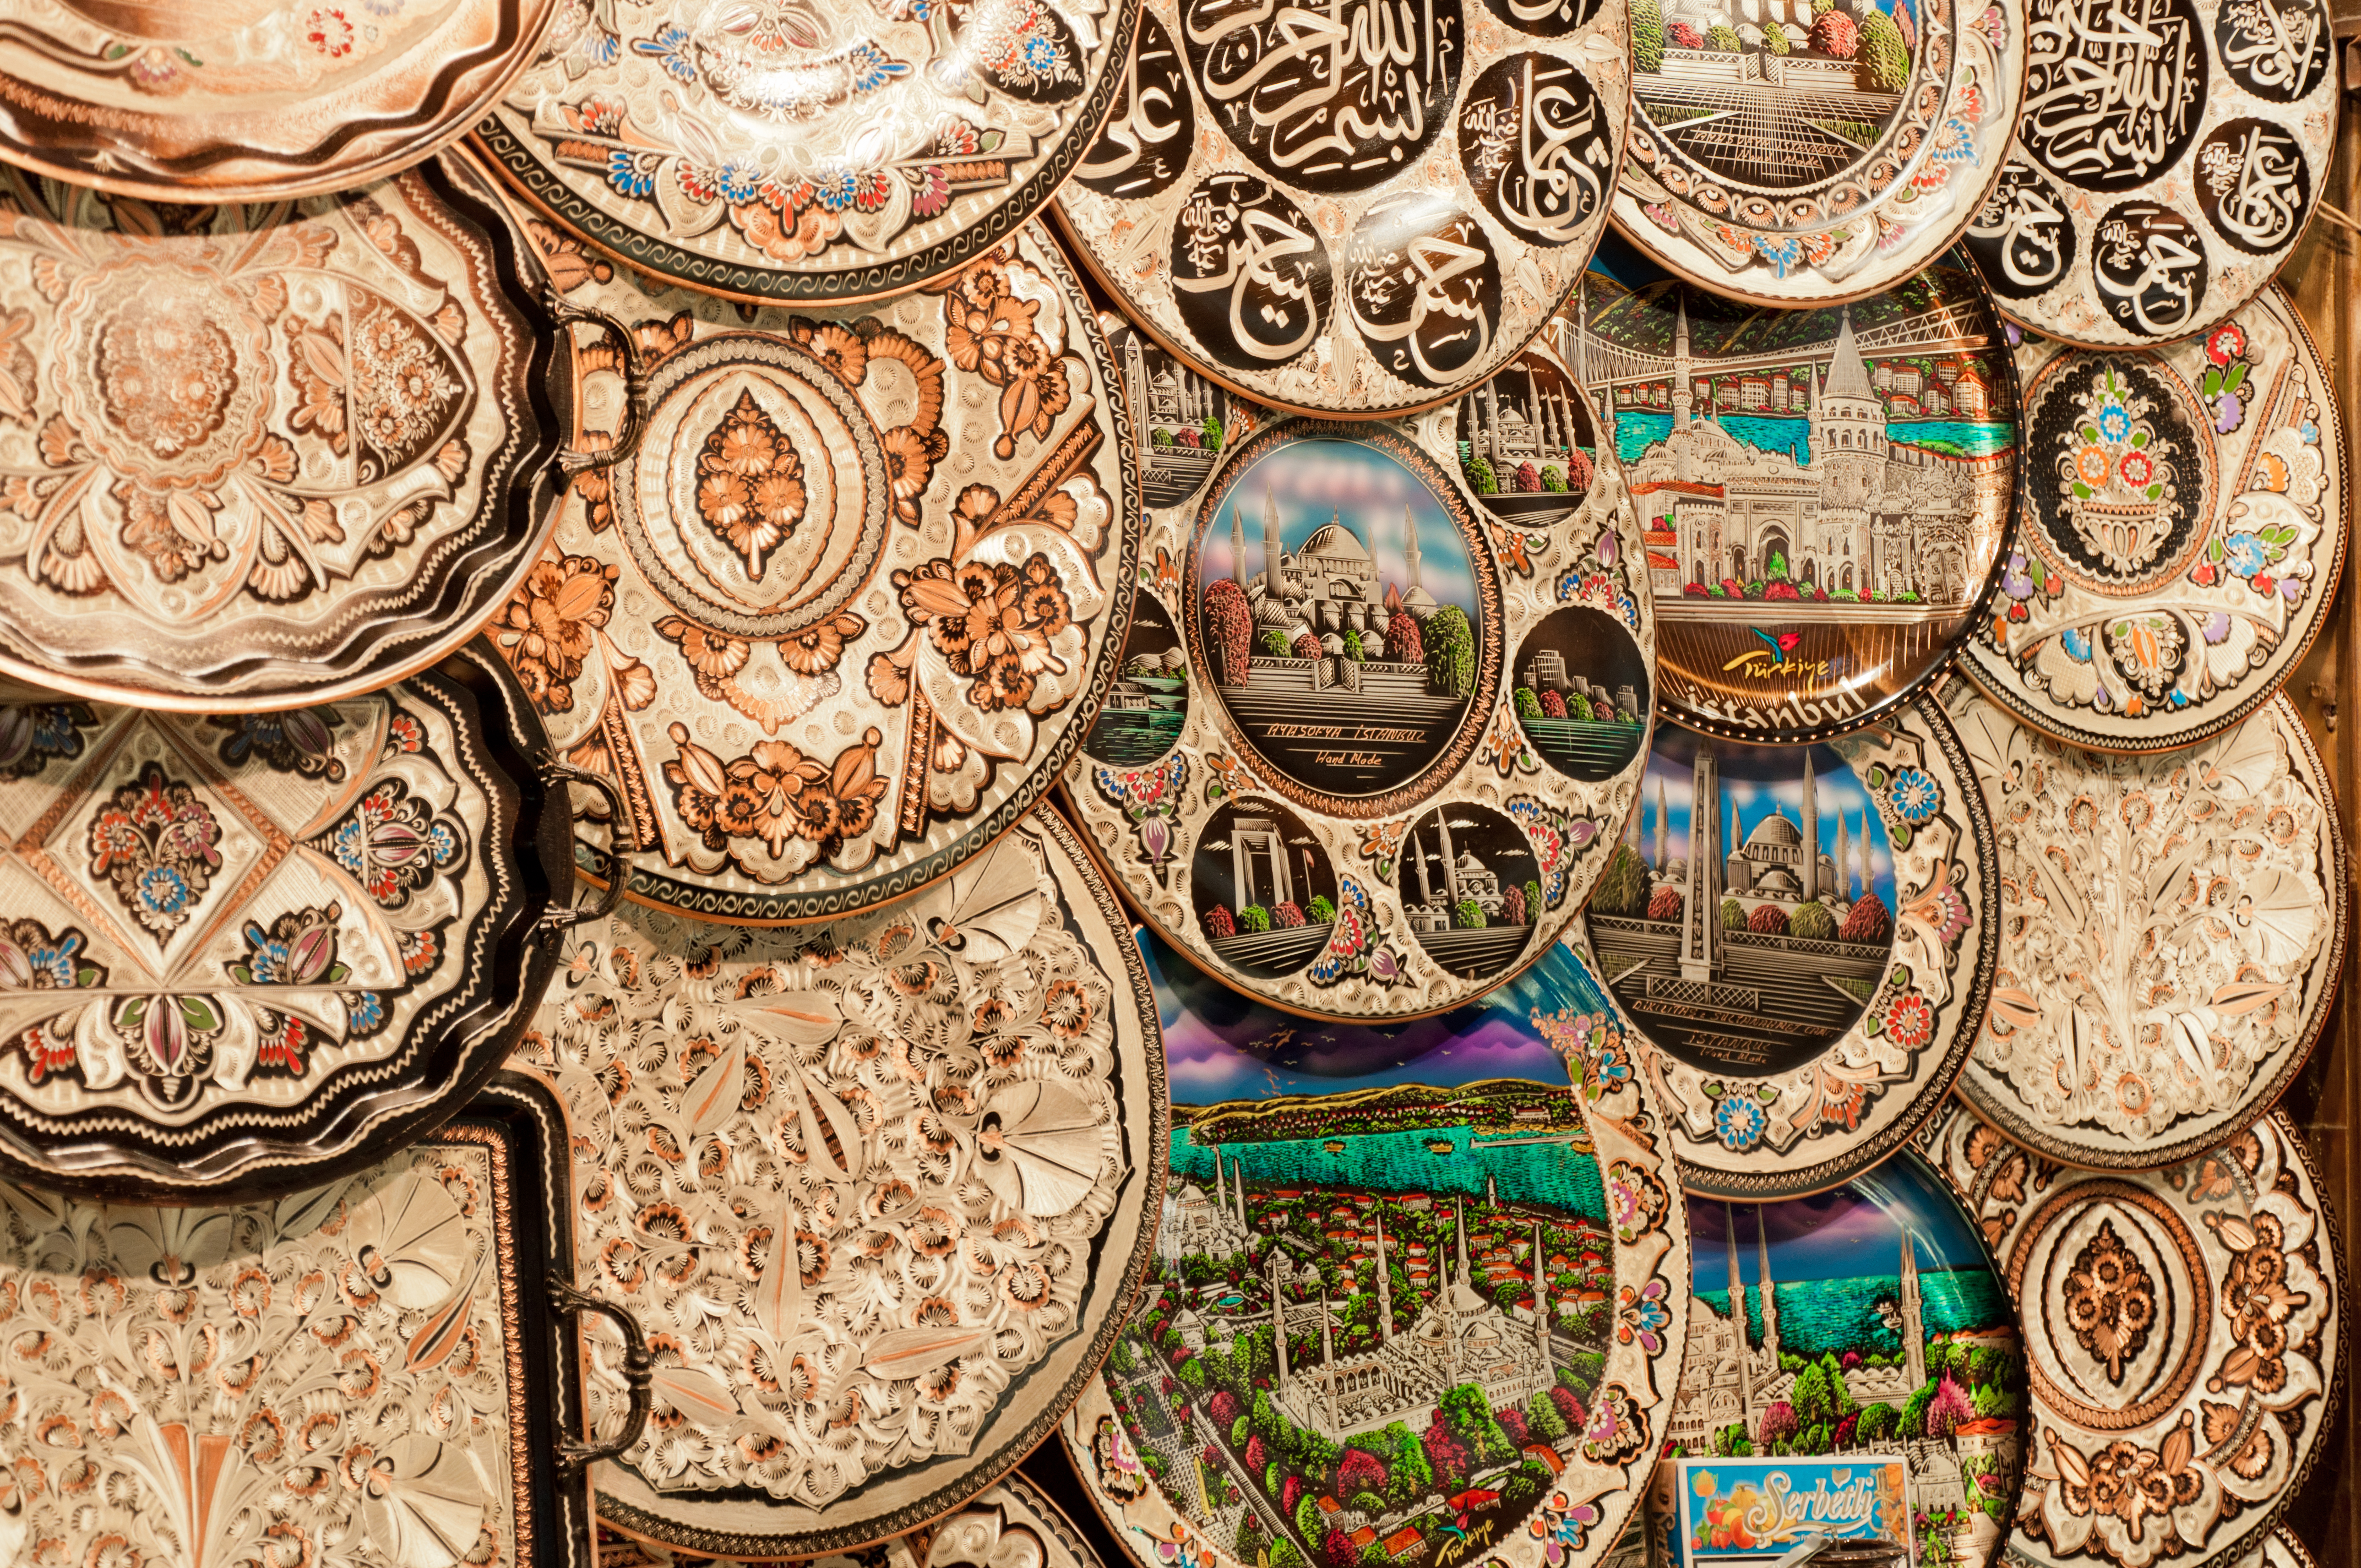 Turkish plates